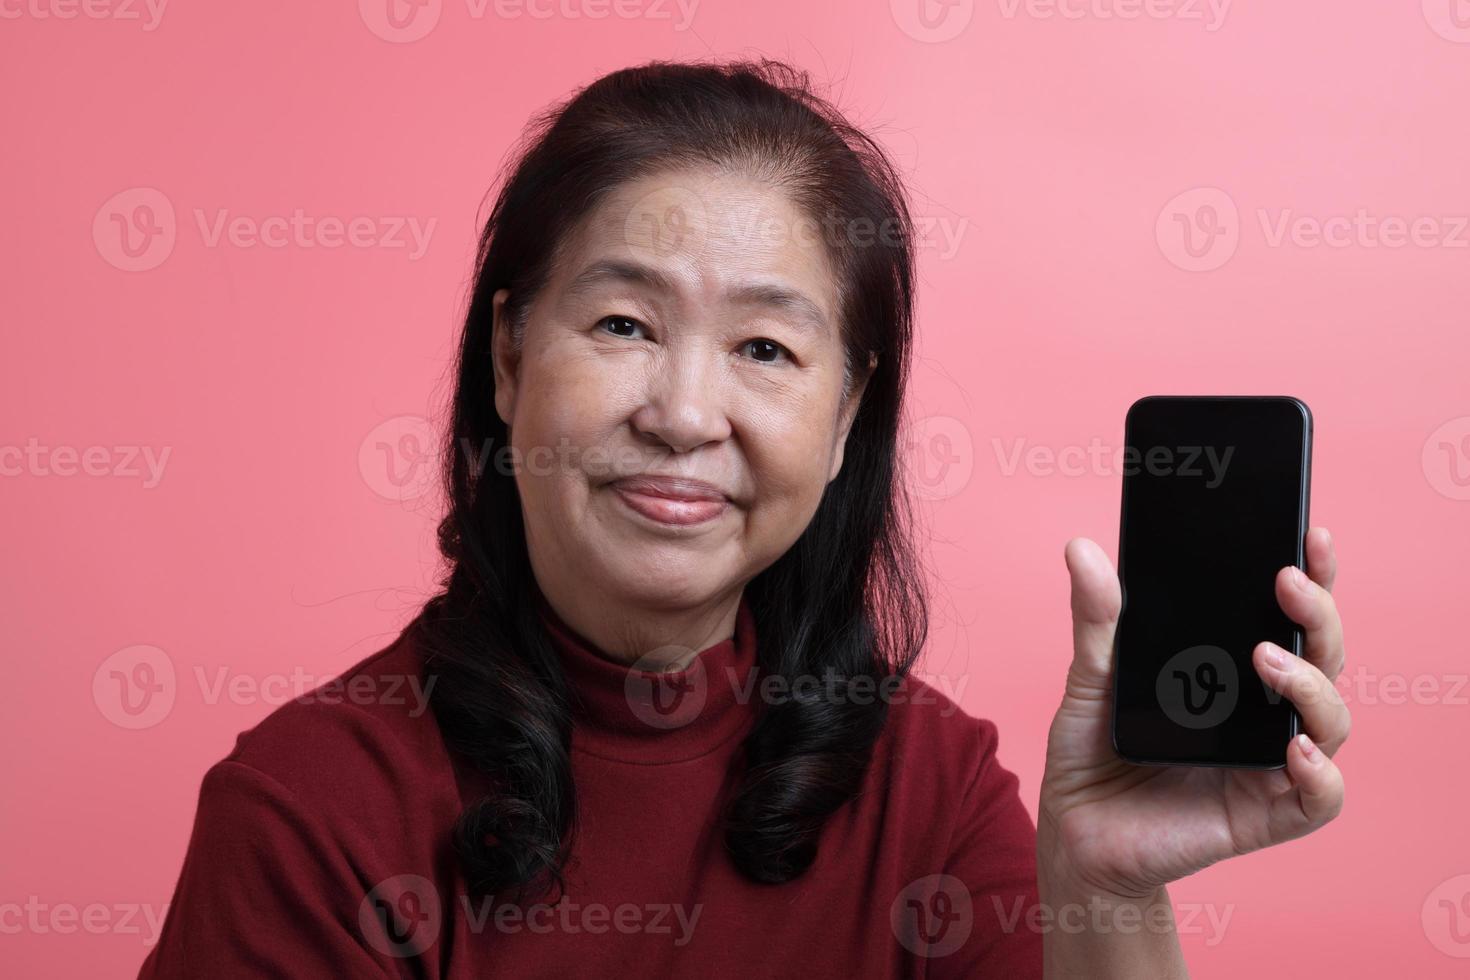 Asian Woman Portrait photo